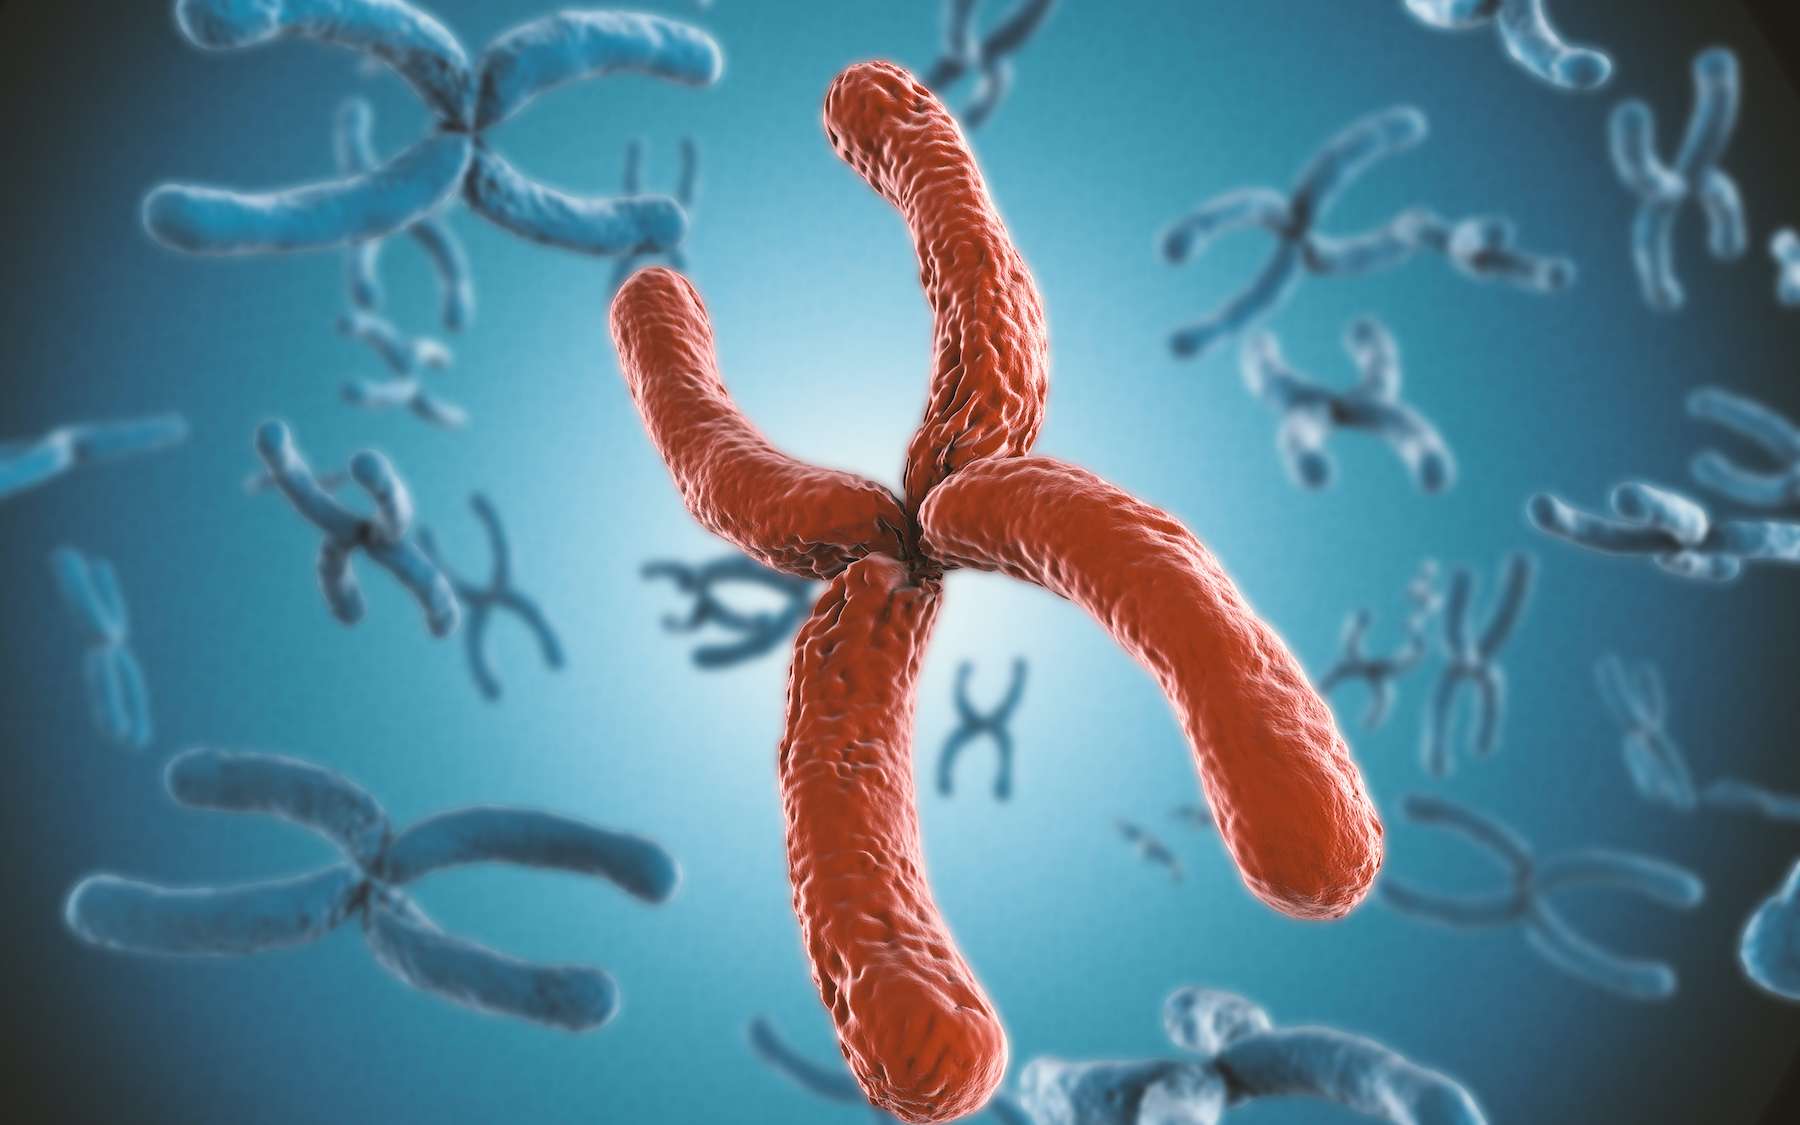 Certains hommes portent un chromosome sexuel supplémentaire favorisant ainsi l'apparition de certaines maladies selon une étude récente. © Phonlamaiphoto, Adobe Stock